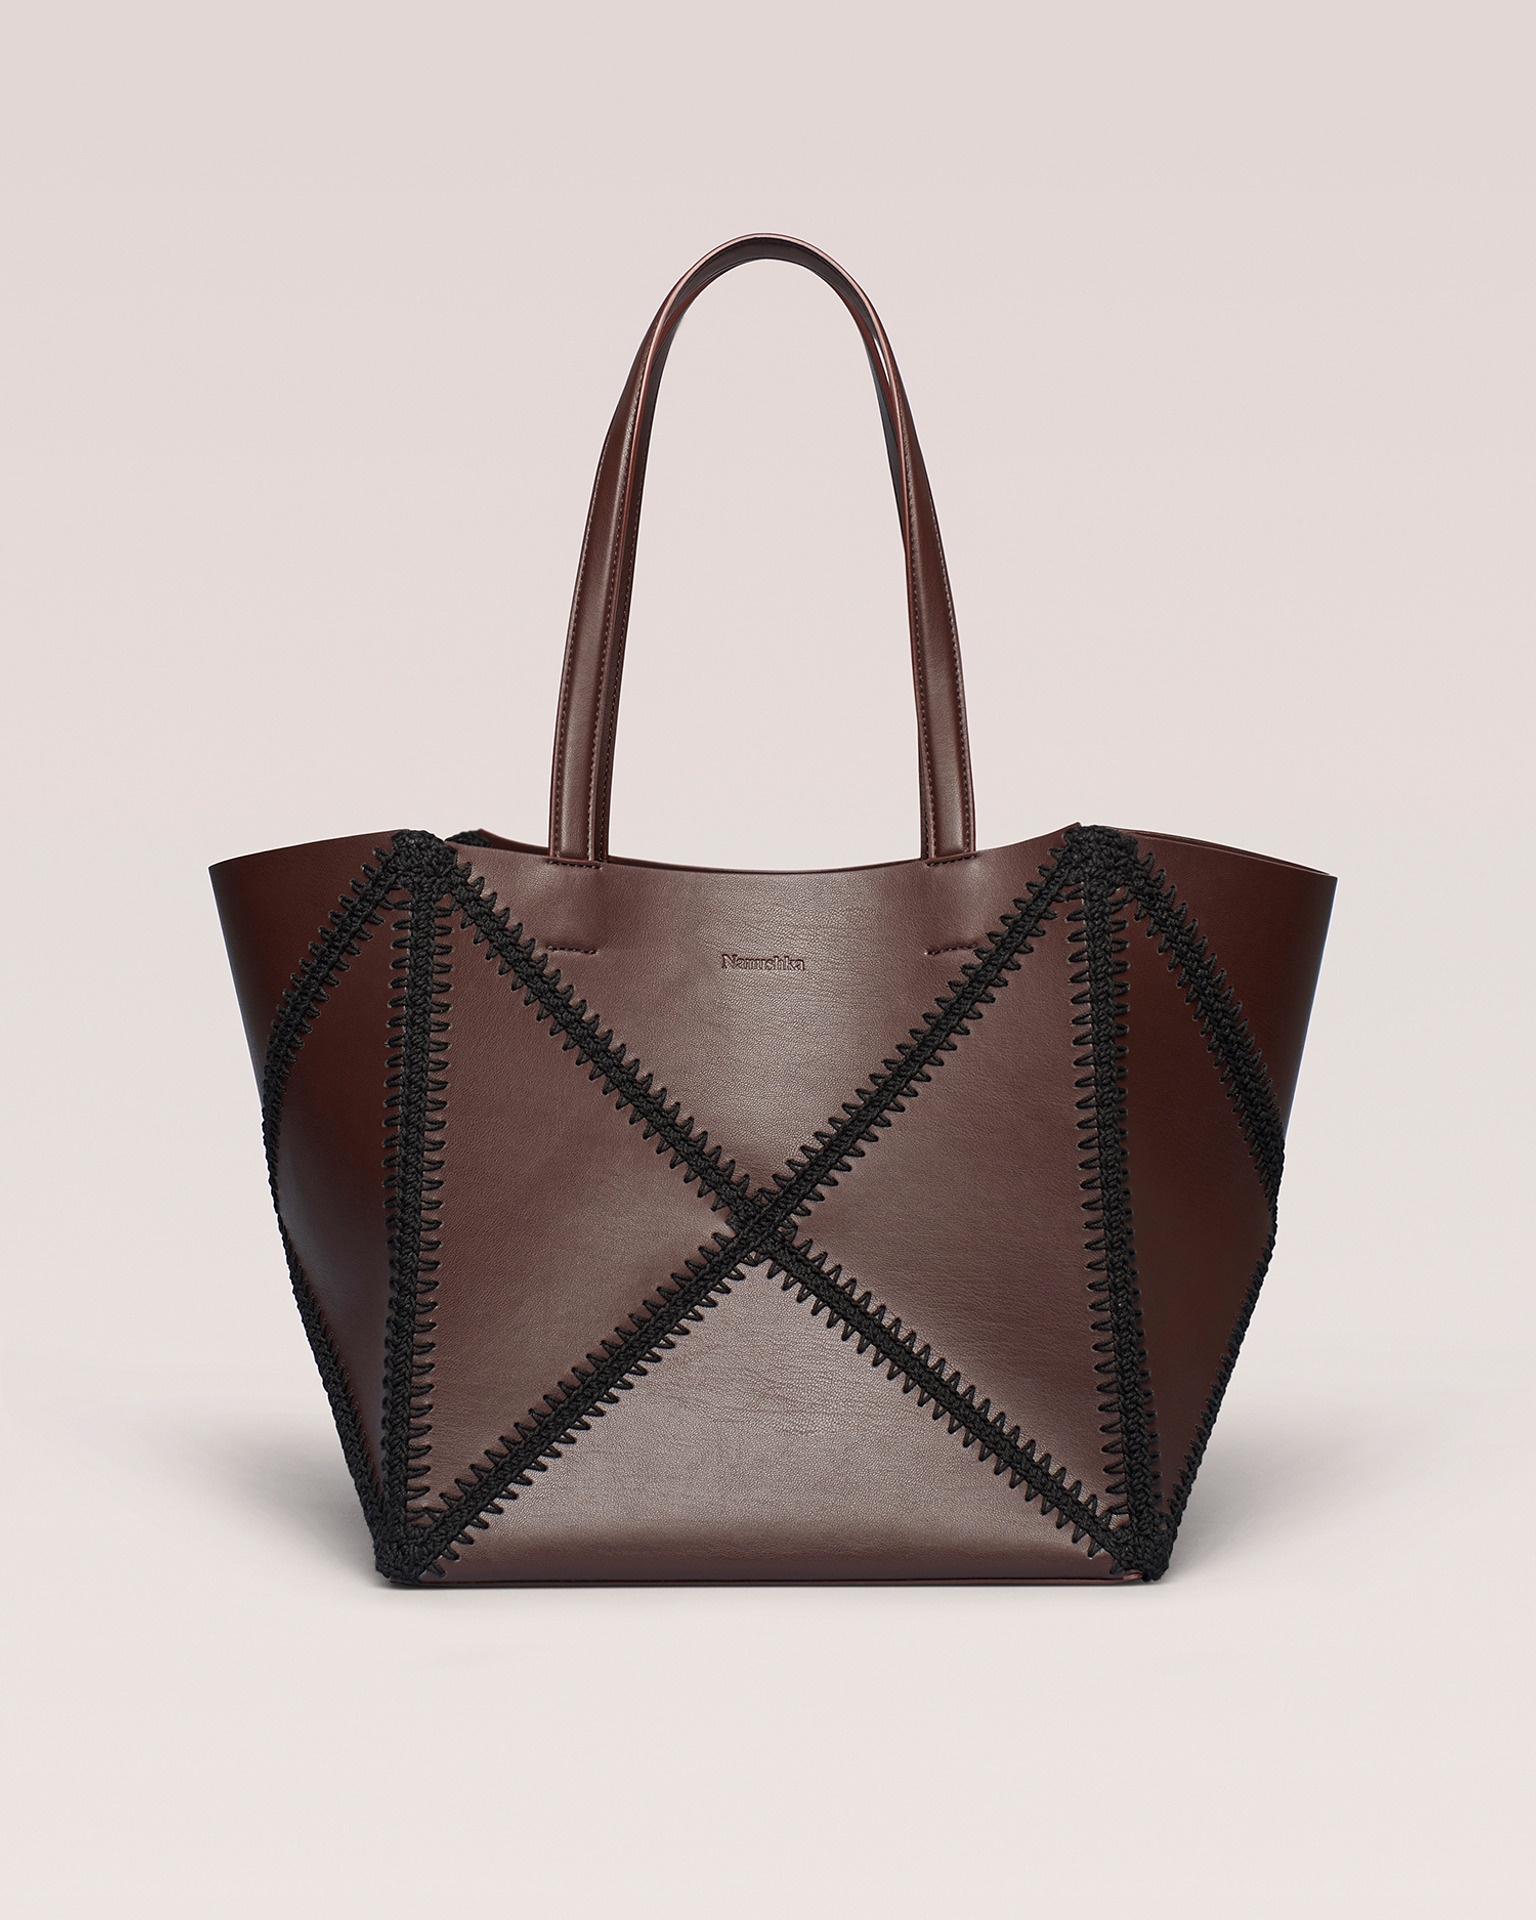 THE ORIGAMI TOTE - Tote bag - Dark brown/Black - 1